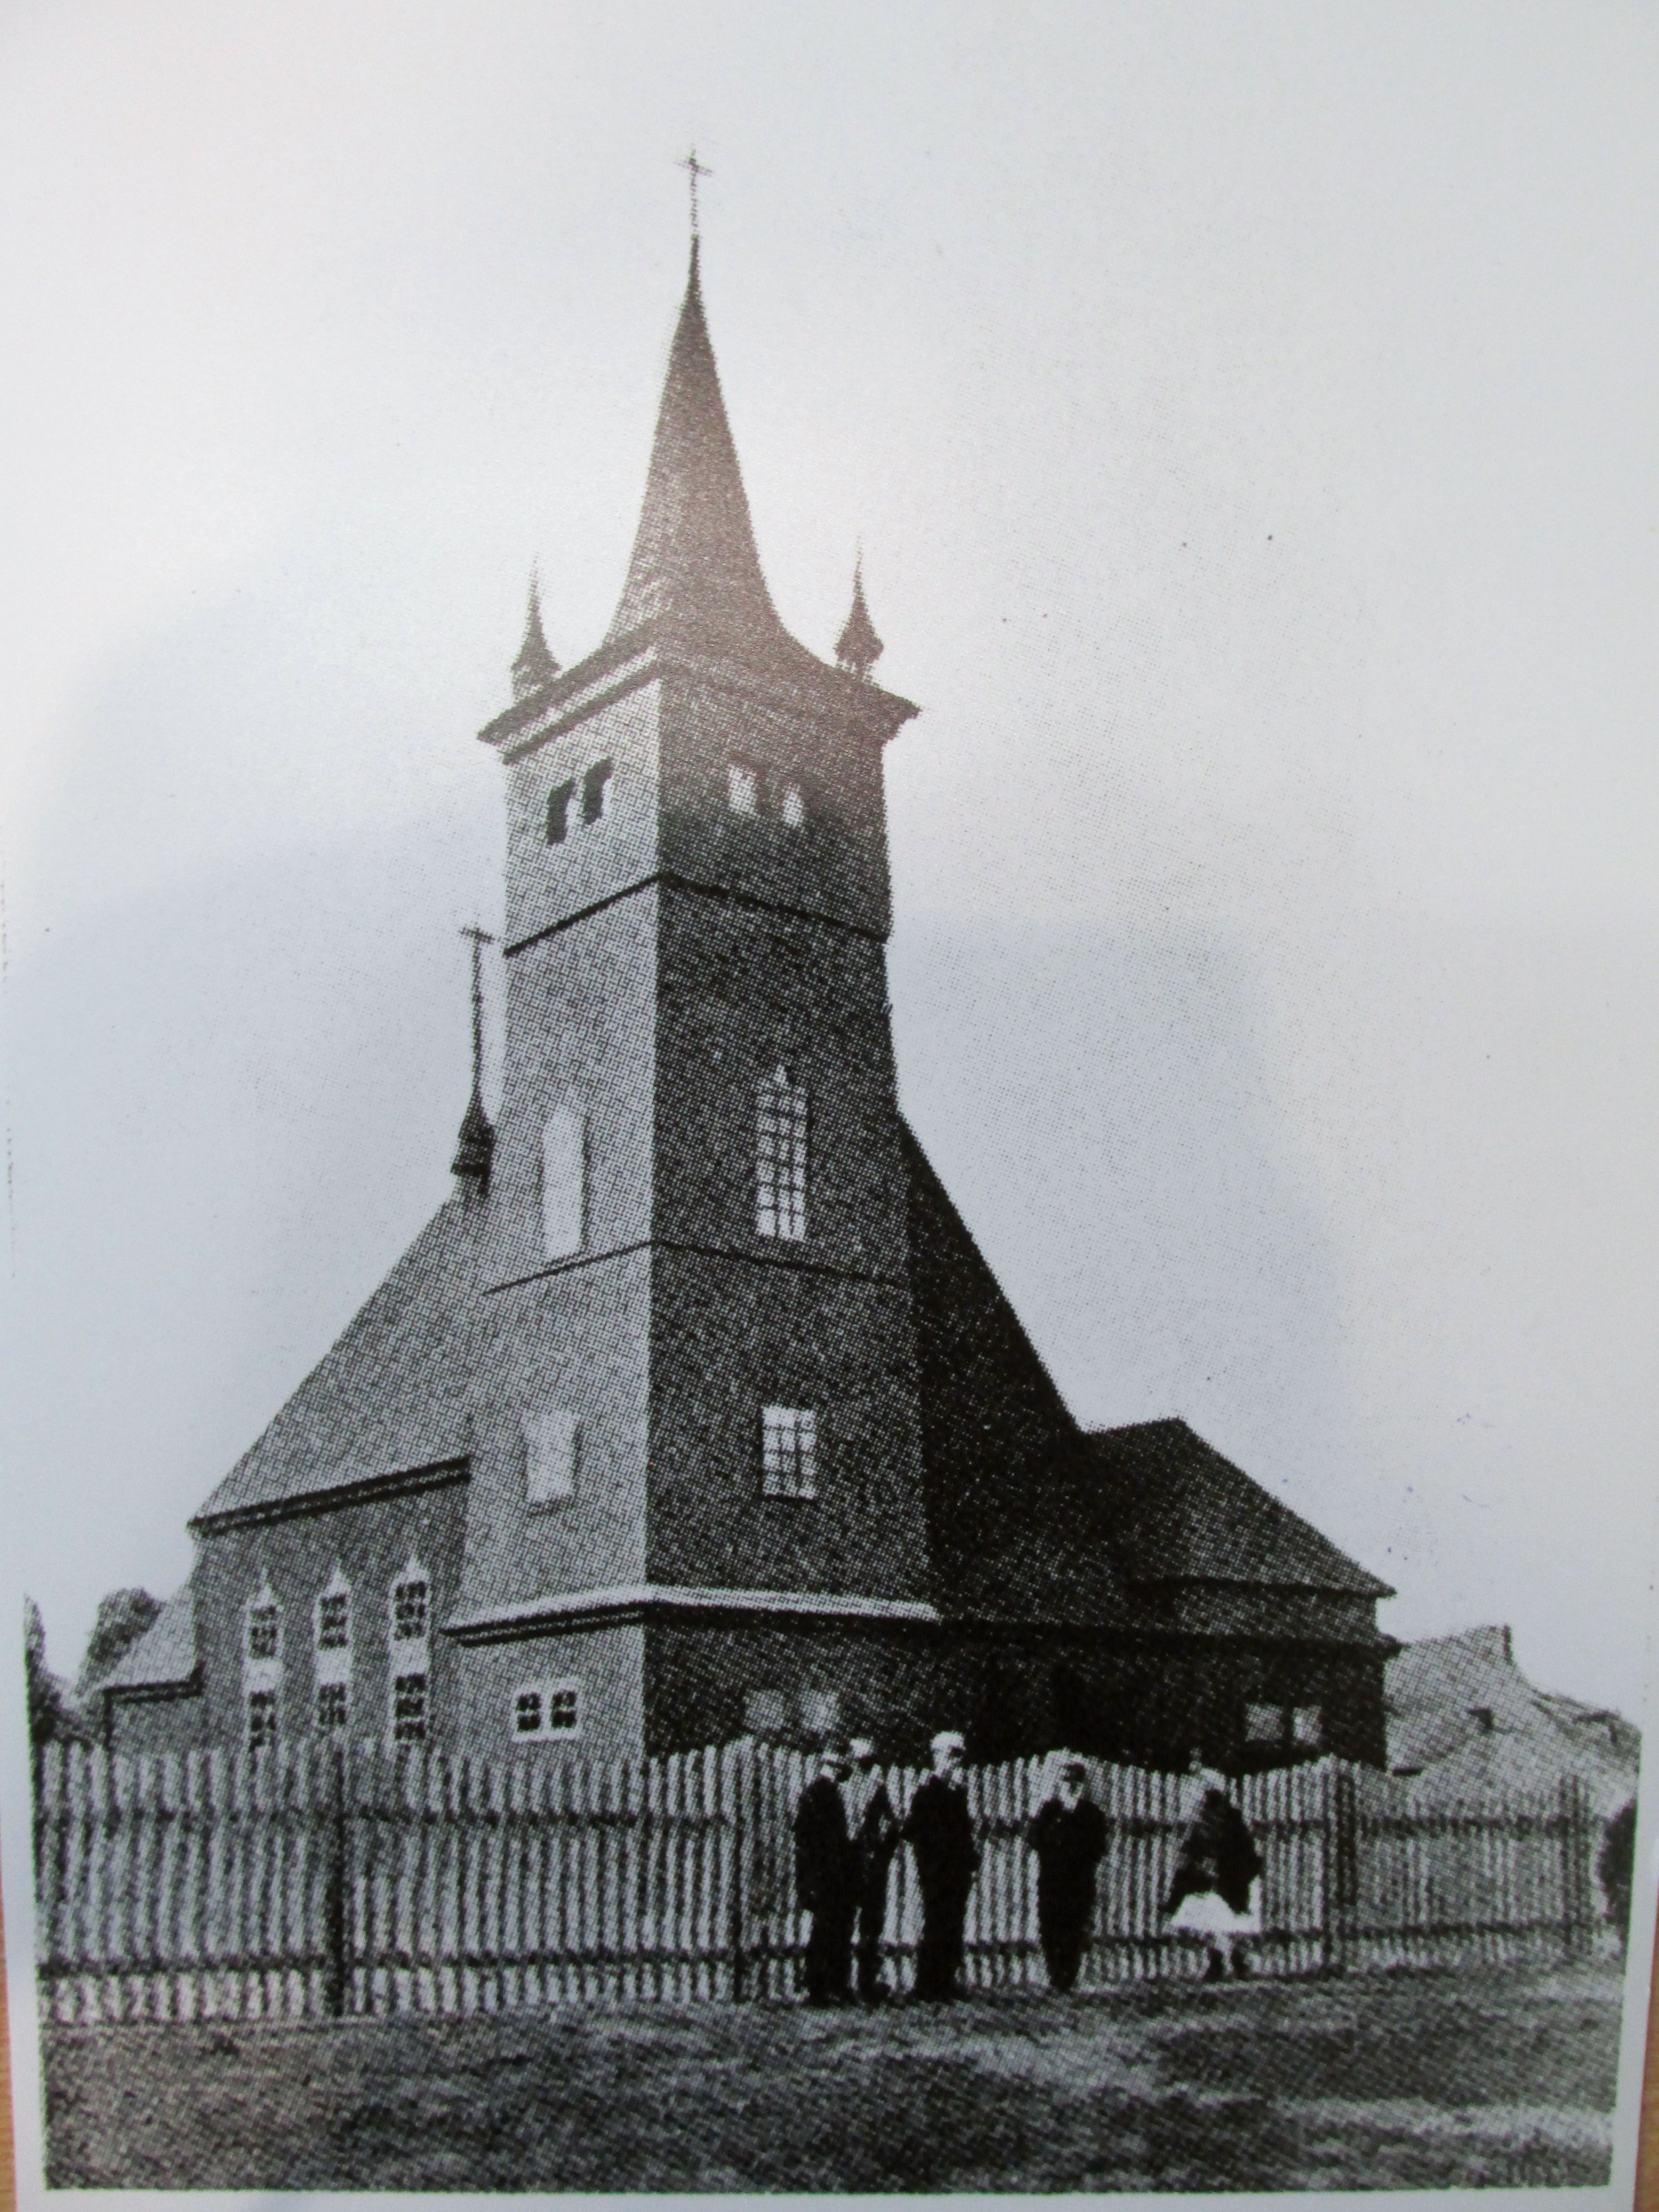  Lutherische Kirche in Kostopil (heute Stadt Kostopil in der Oblast Riwne). Staatsarchiv der Oblast Riwne 